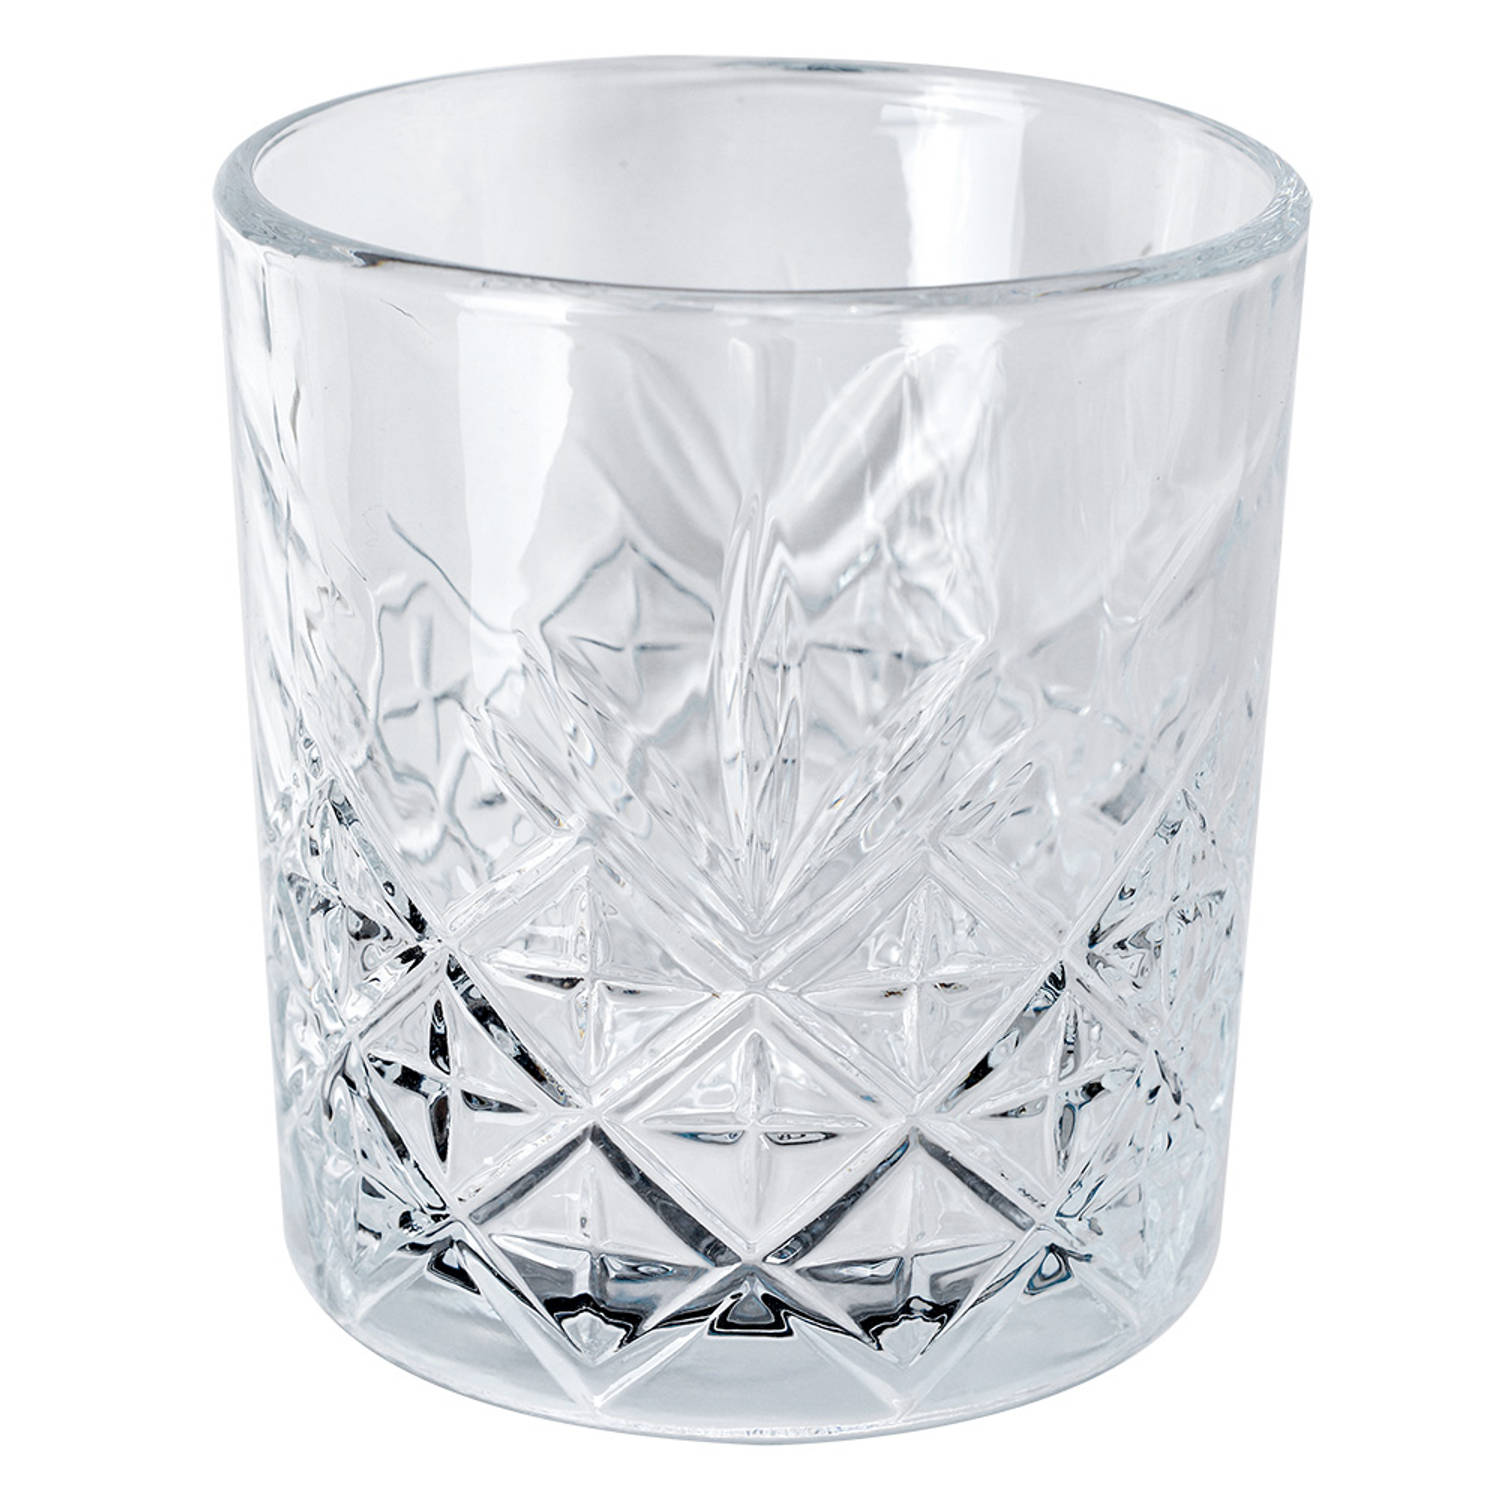 Clayre & Eef Waterglas 320 ml Transparant Glas Drinkbeker